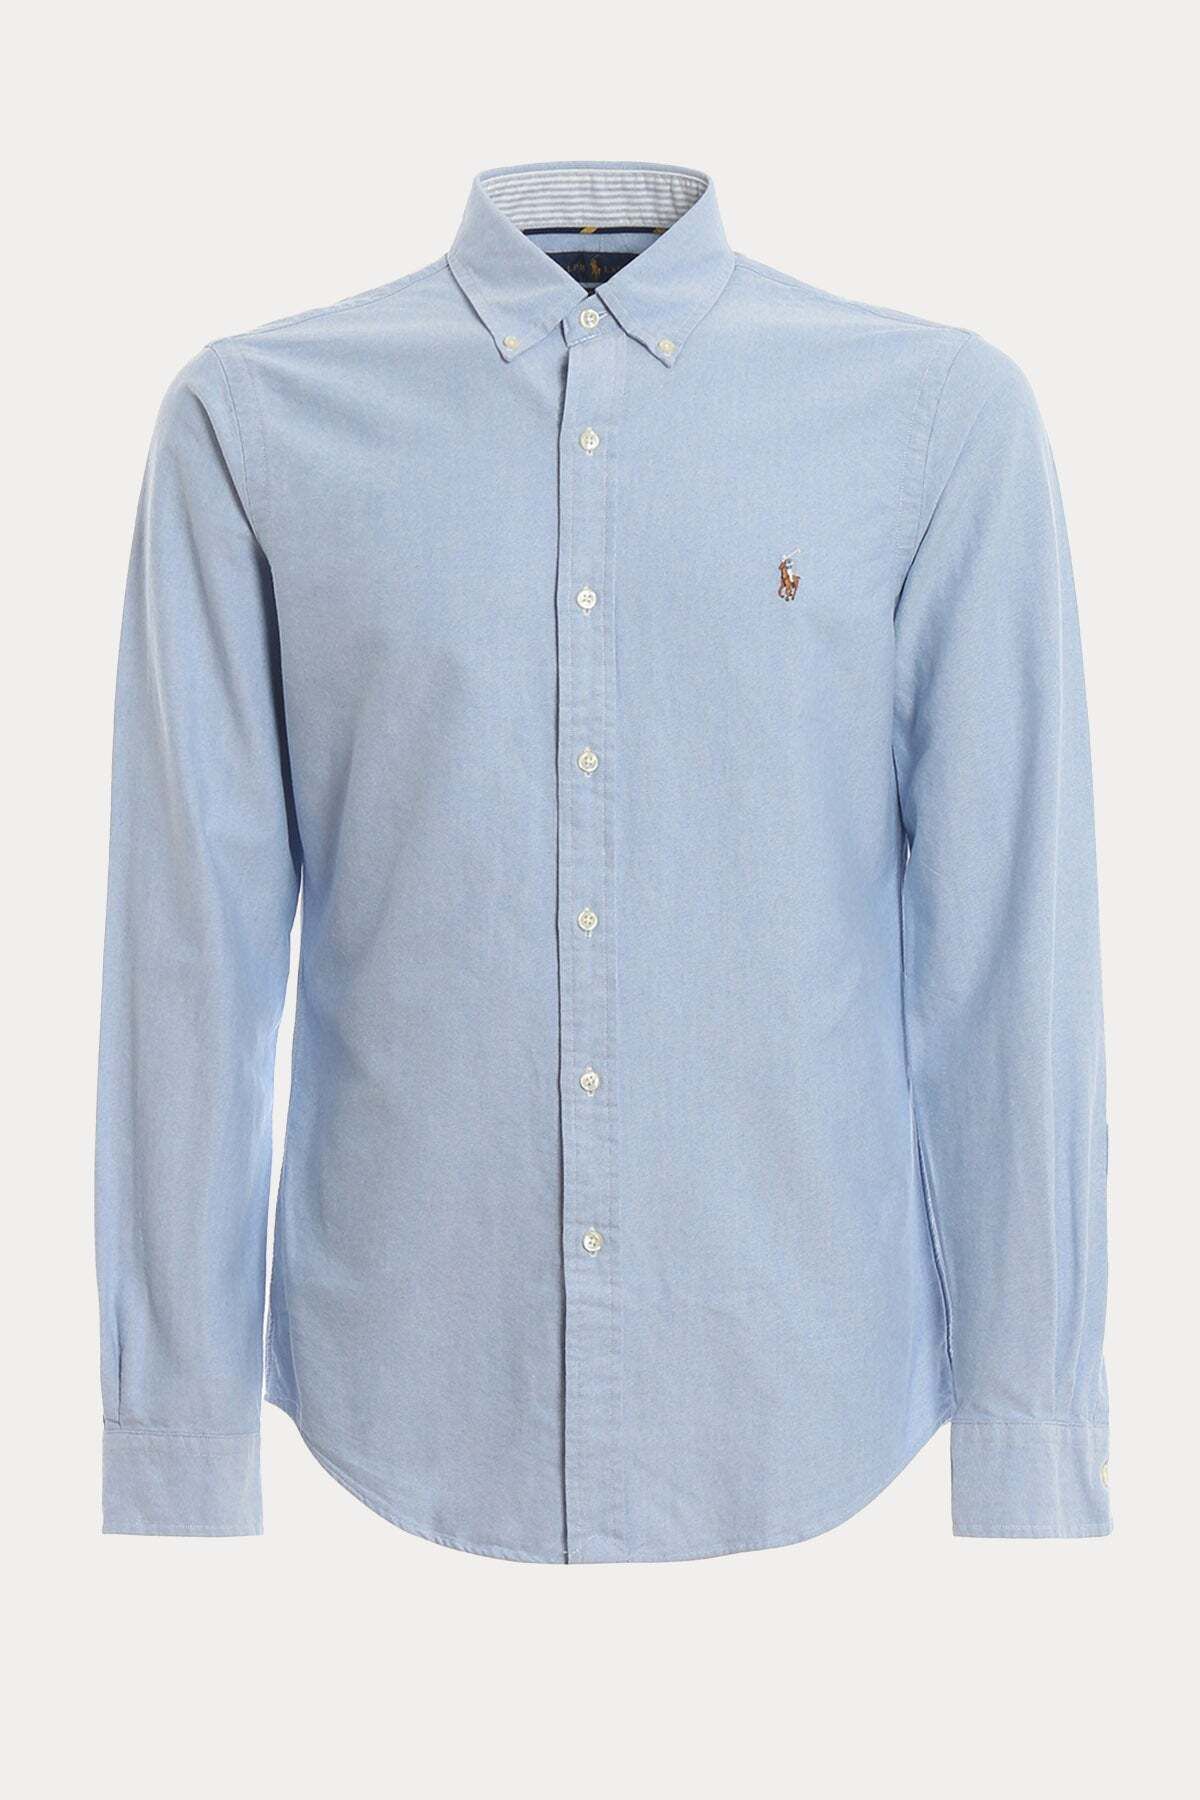 Ralph Lauren Slim Fit Oxford Gömlek L / Mavi